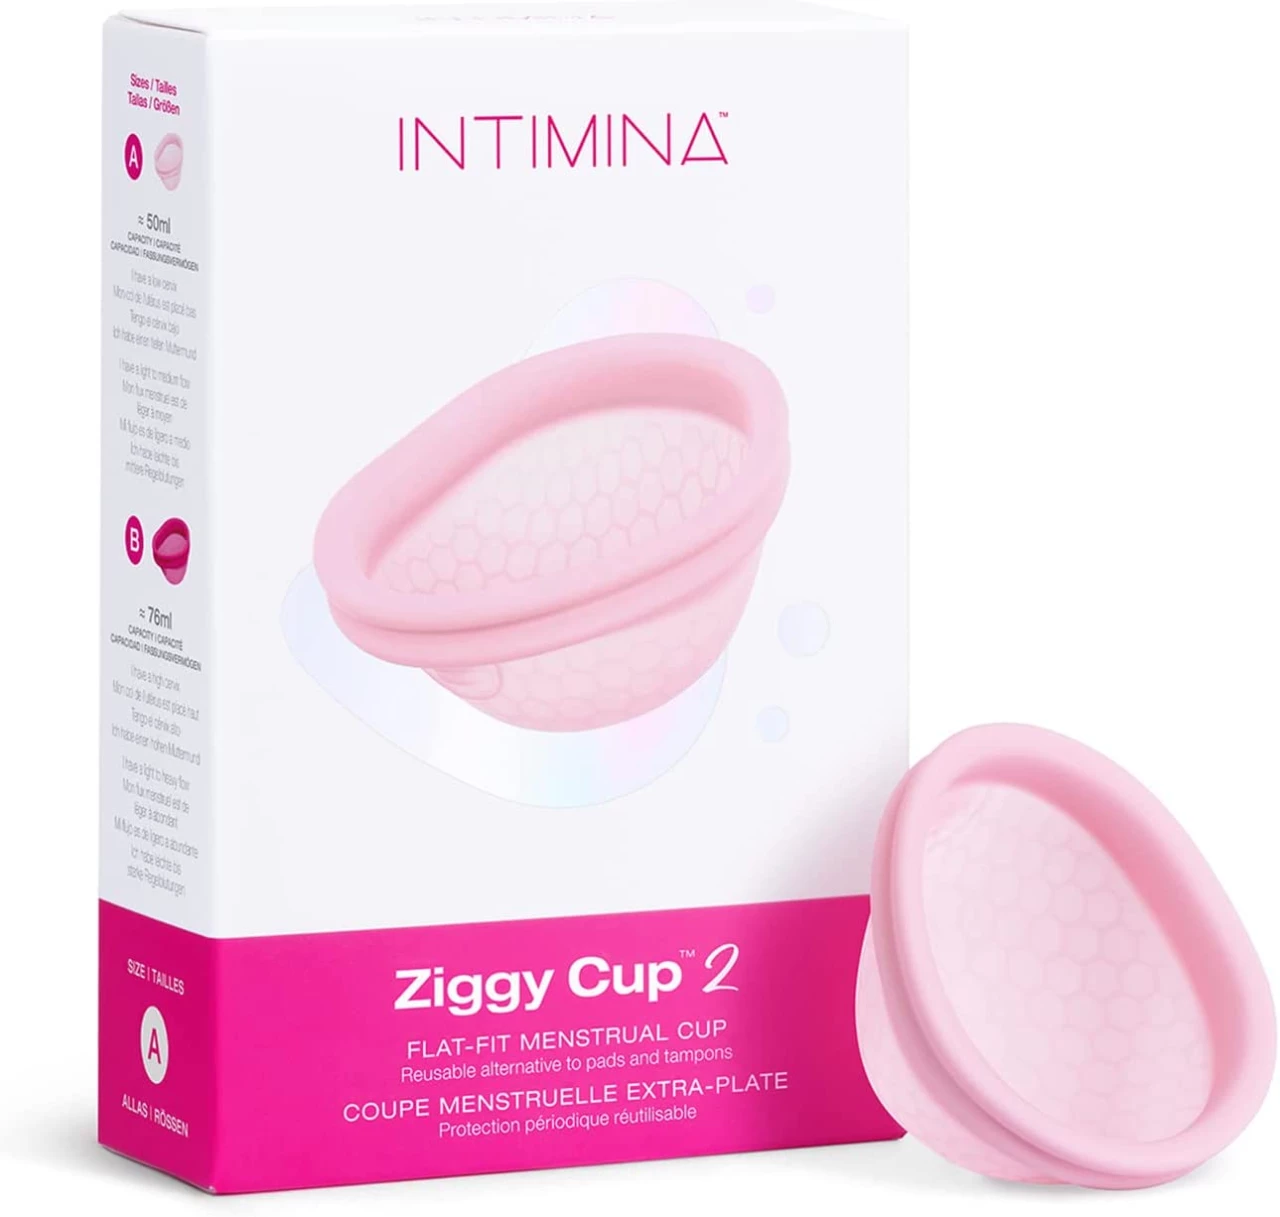 Intimina Ziggy Cup 2: la nueva generación de discos menstruales reusables, planos y ultrafinos (A)